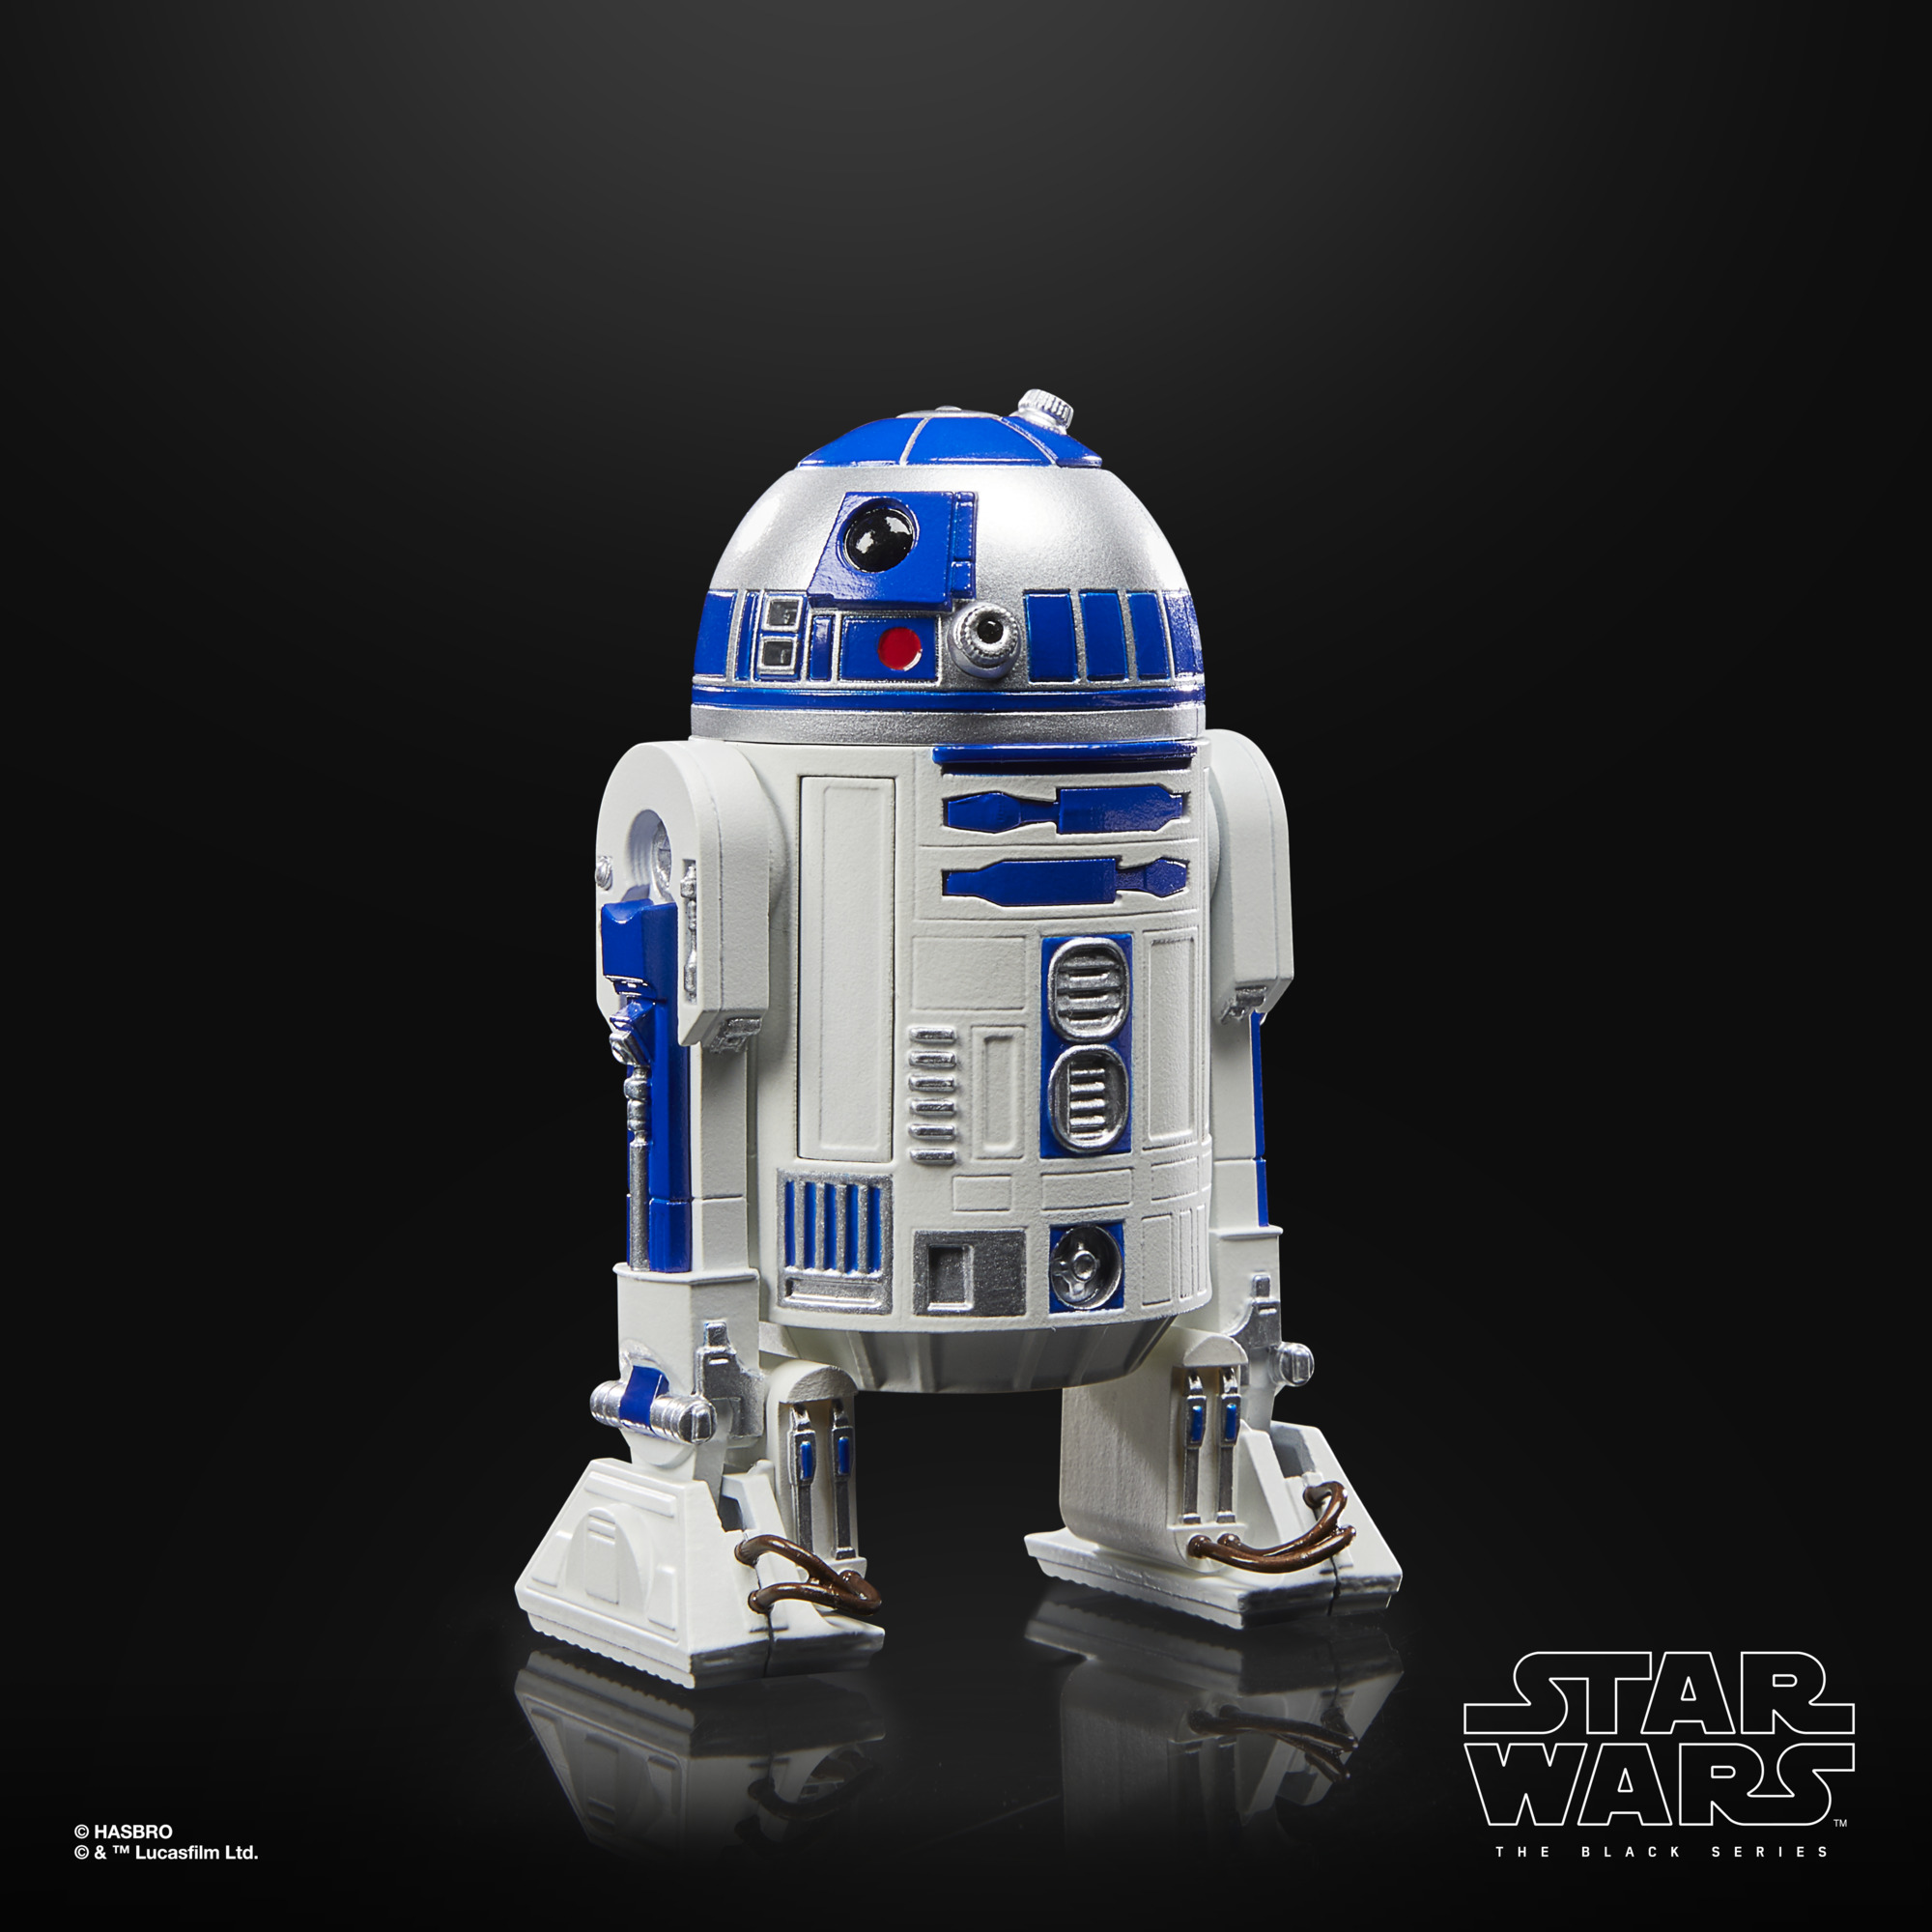 Star Wars The Black Series 40th Anniversary Artoo-Detoo (R2-D2) F70755X2 5010996135780